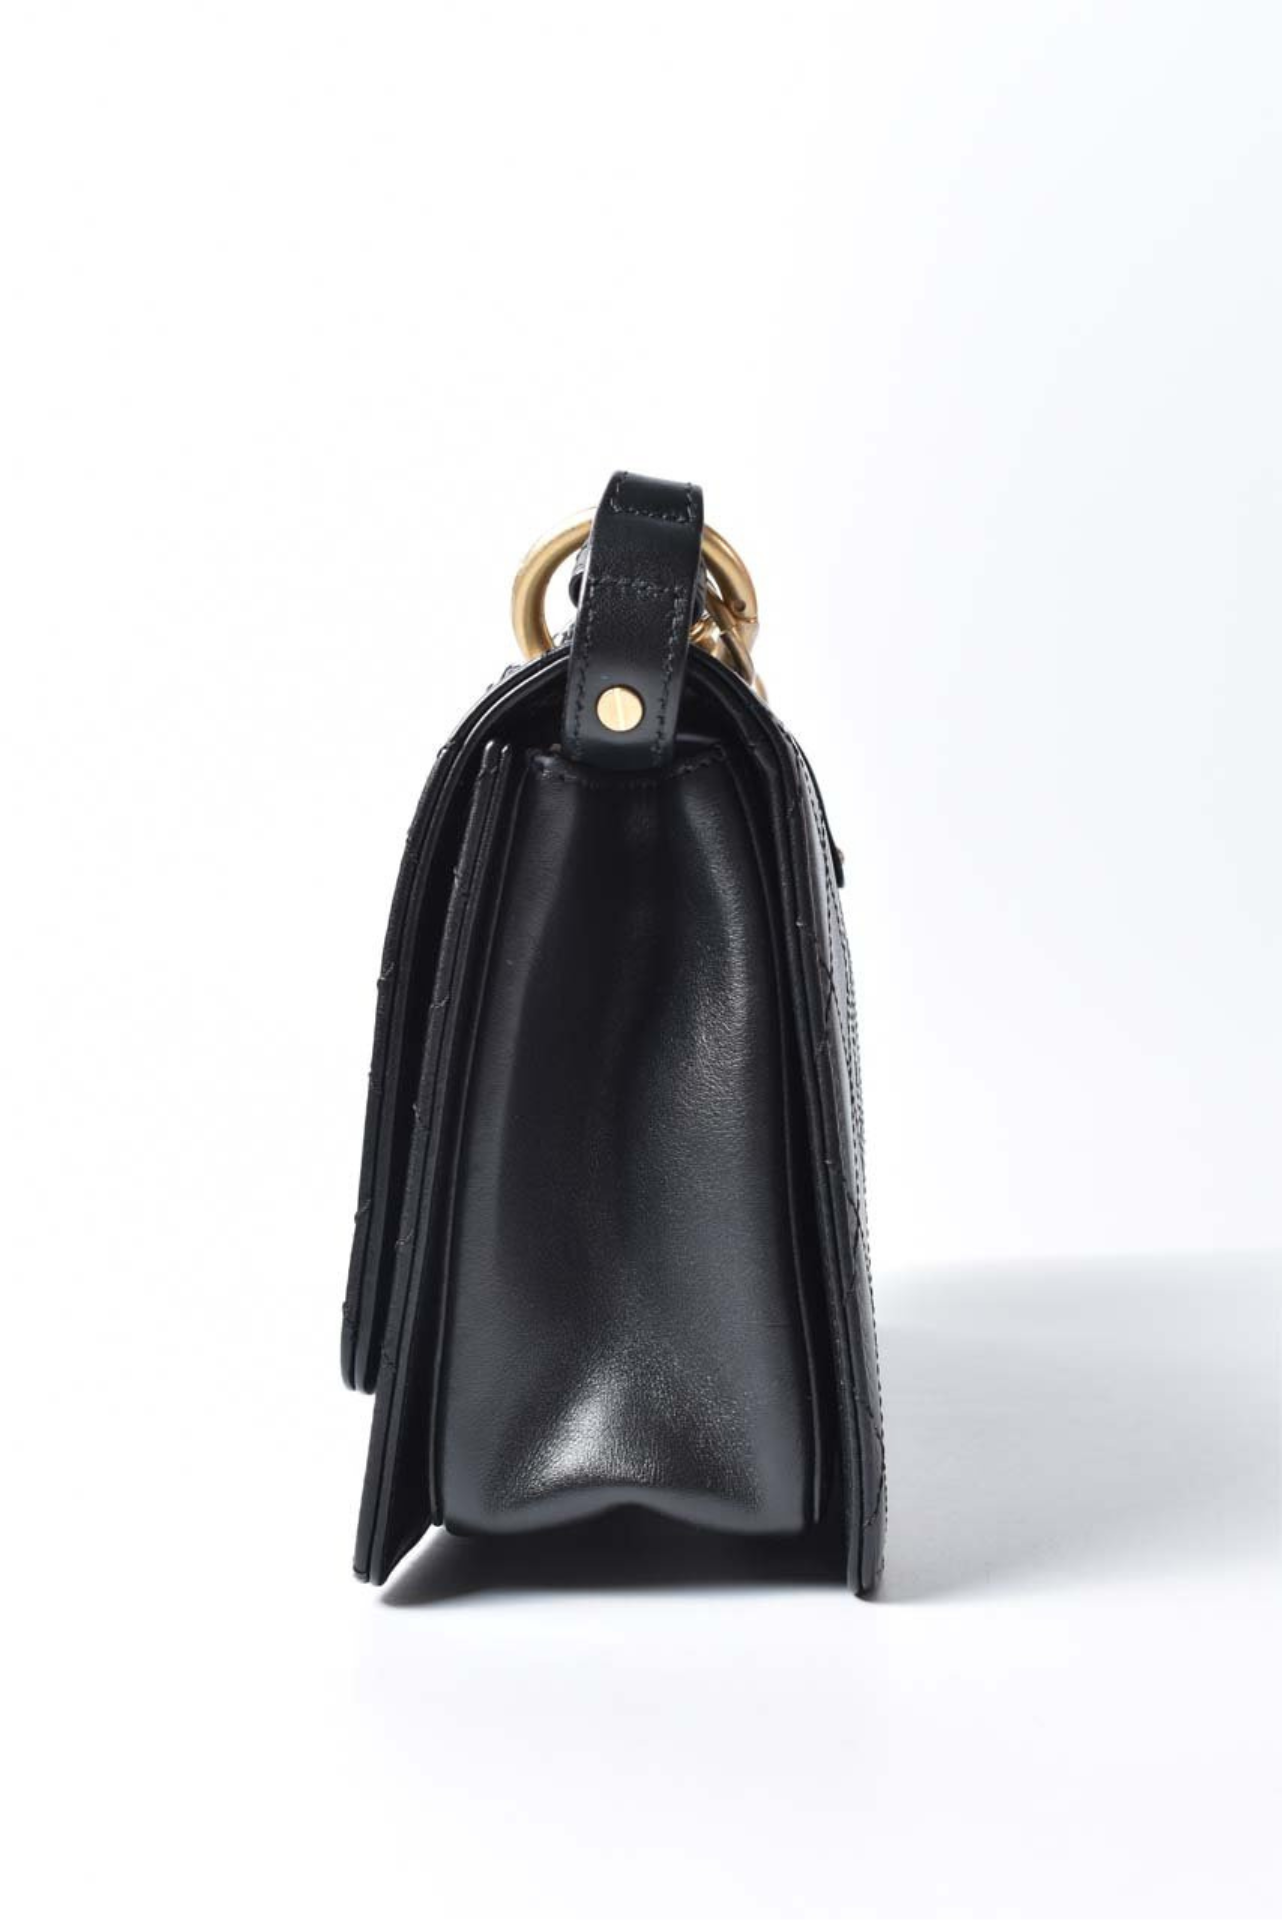 Chanel Black Leather Flap Shoulder Bag